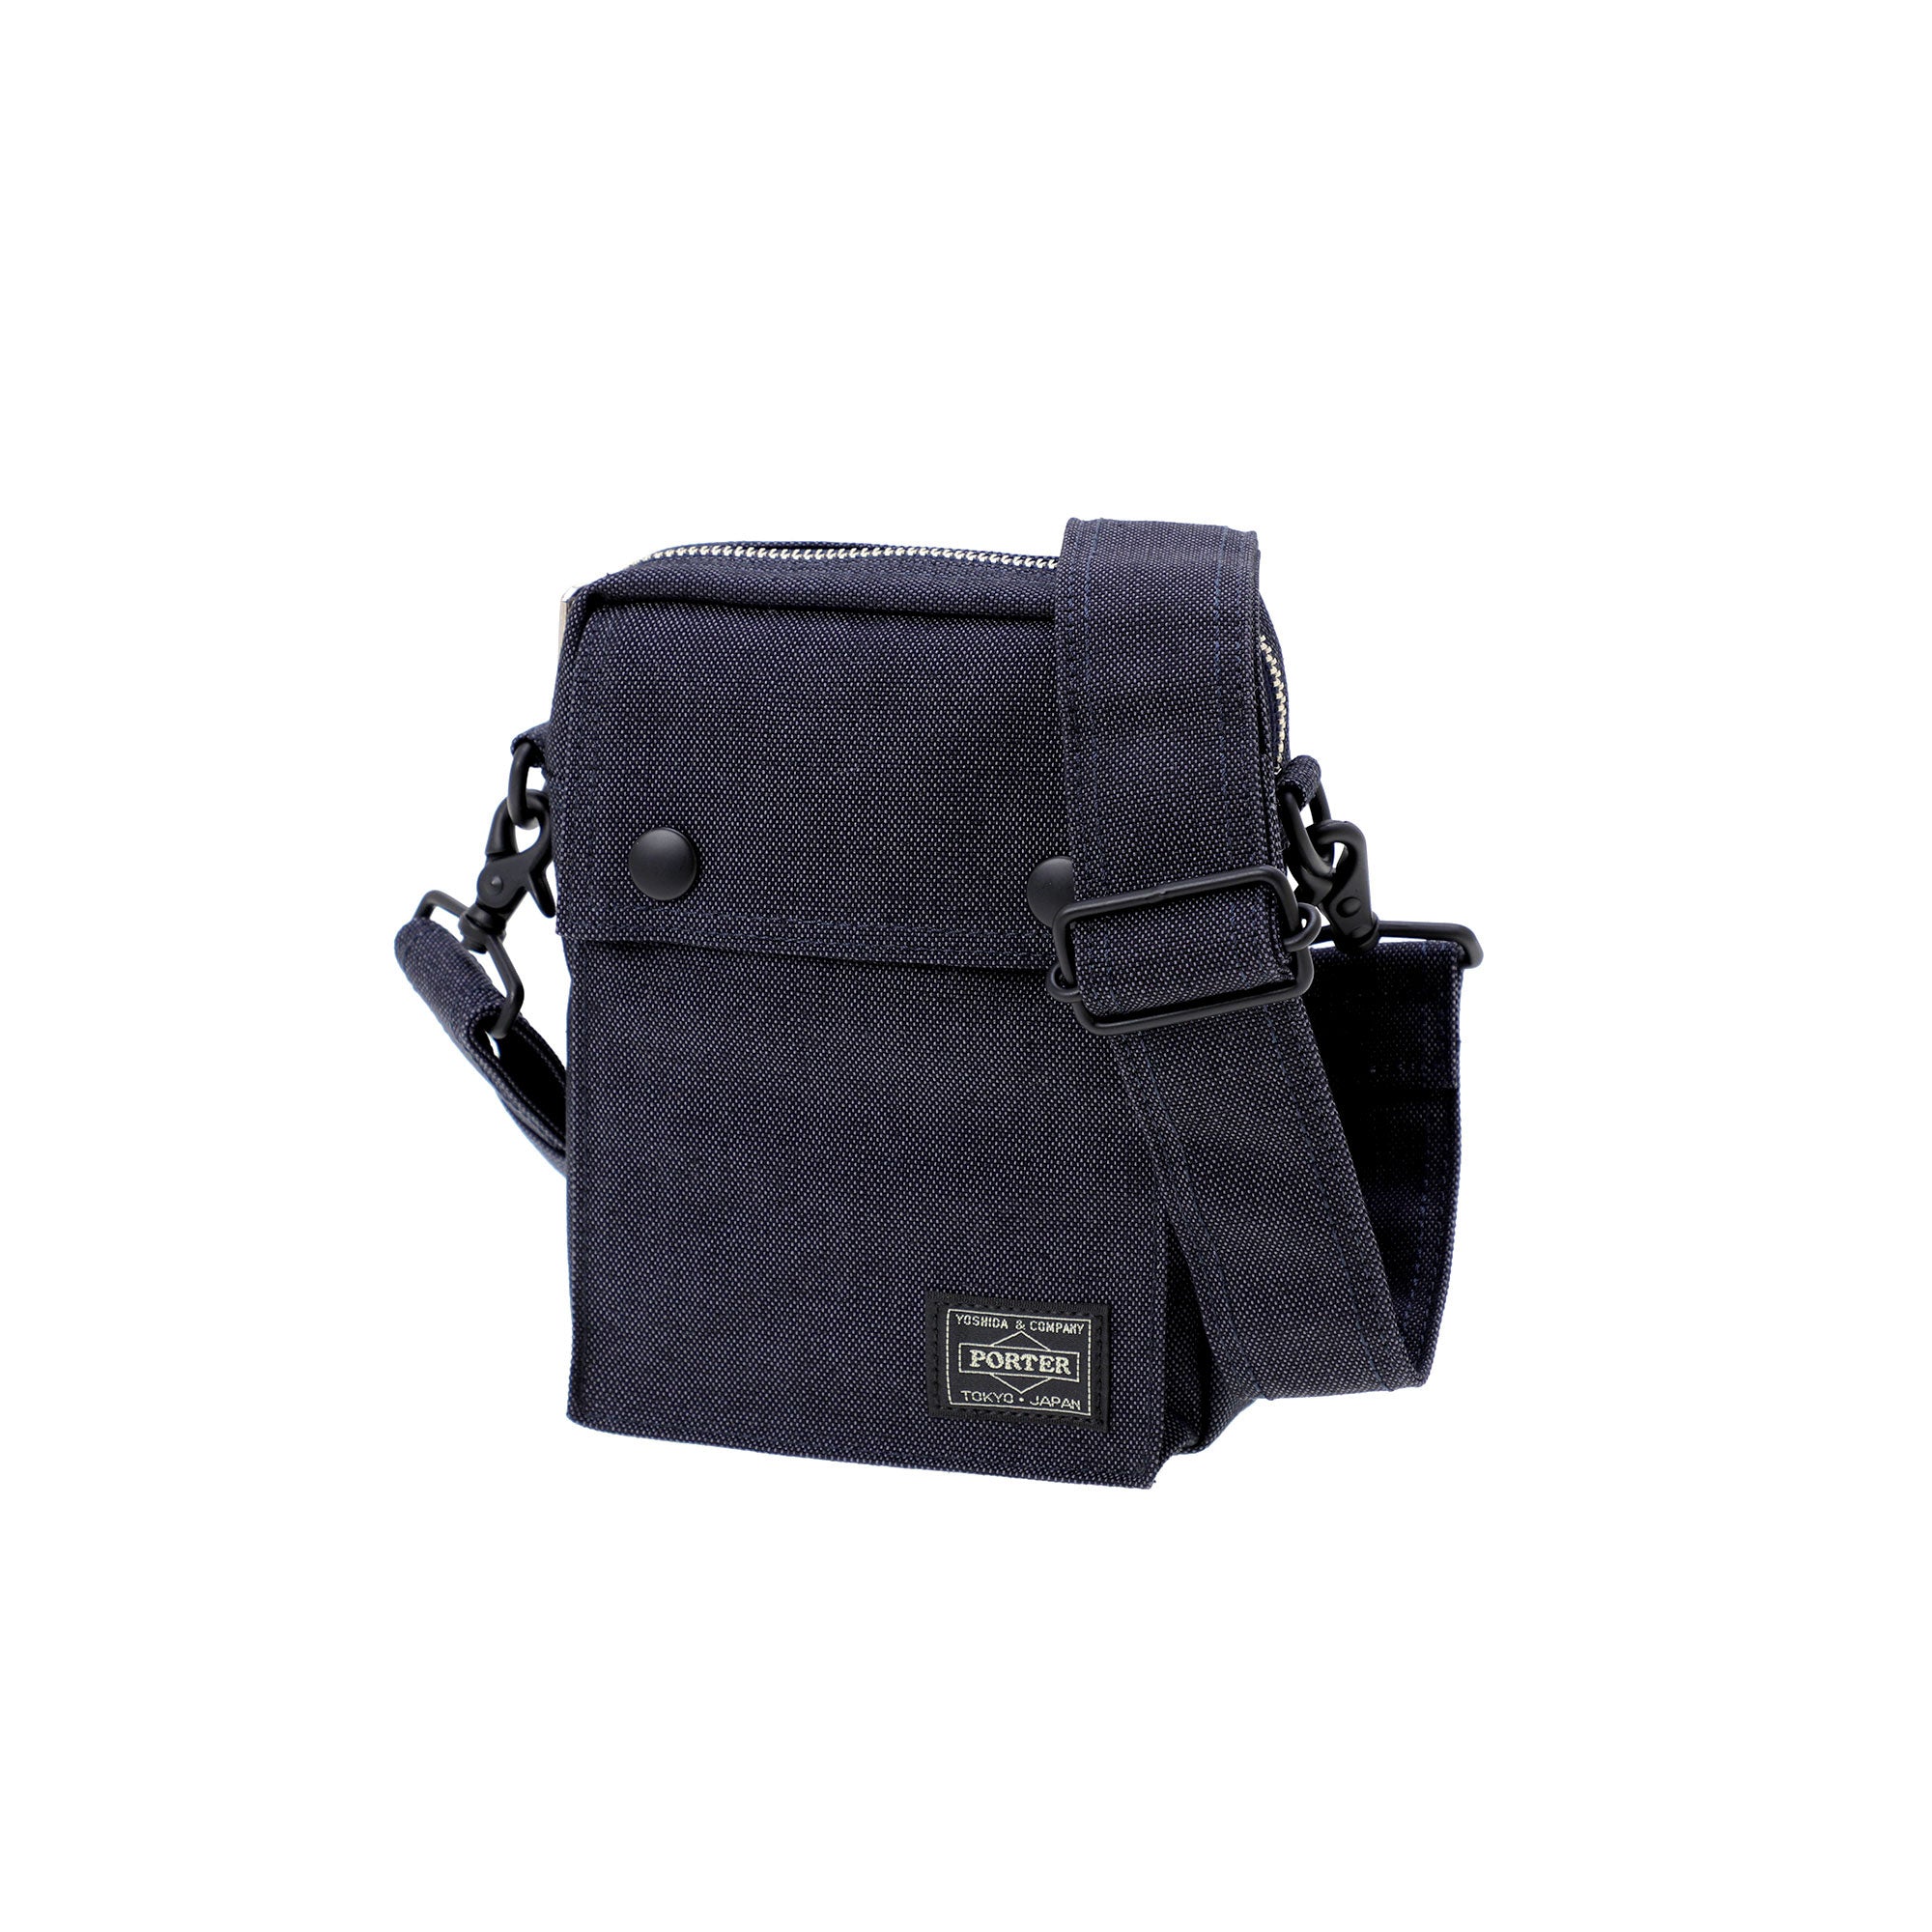 PORTER - Smoky Vertical Shoulder Bag